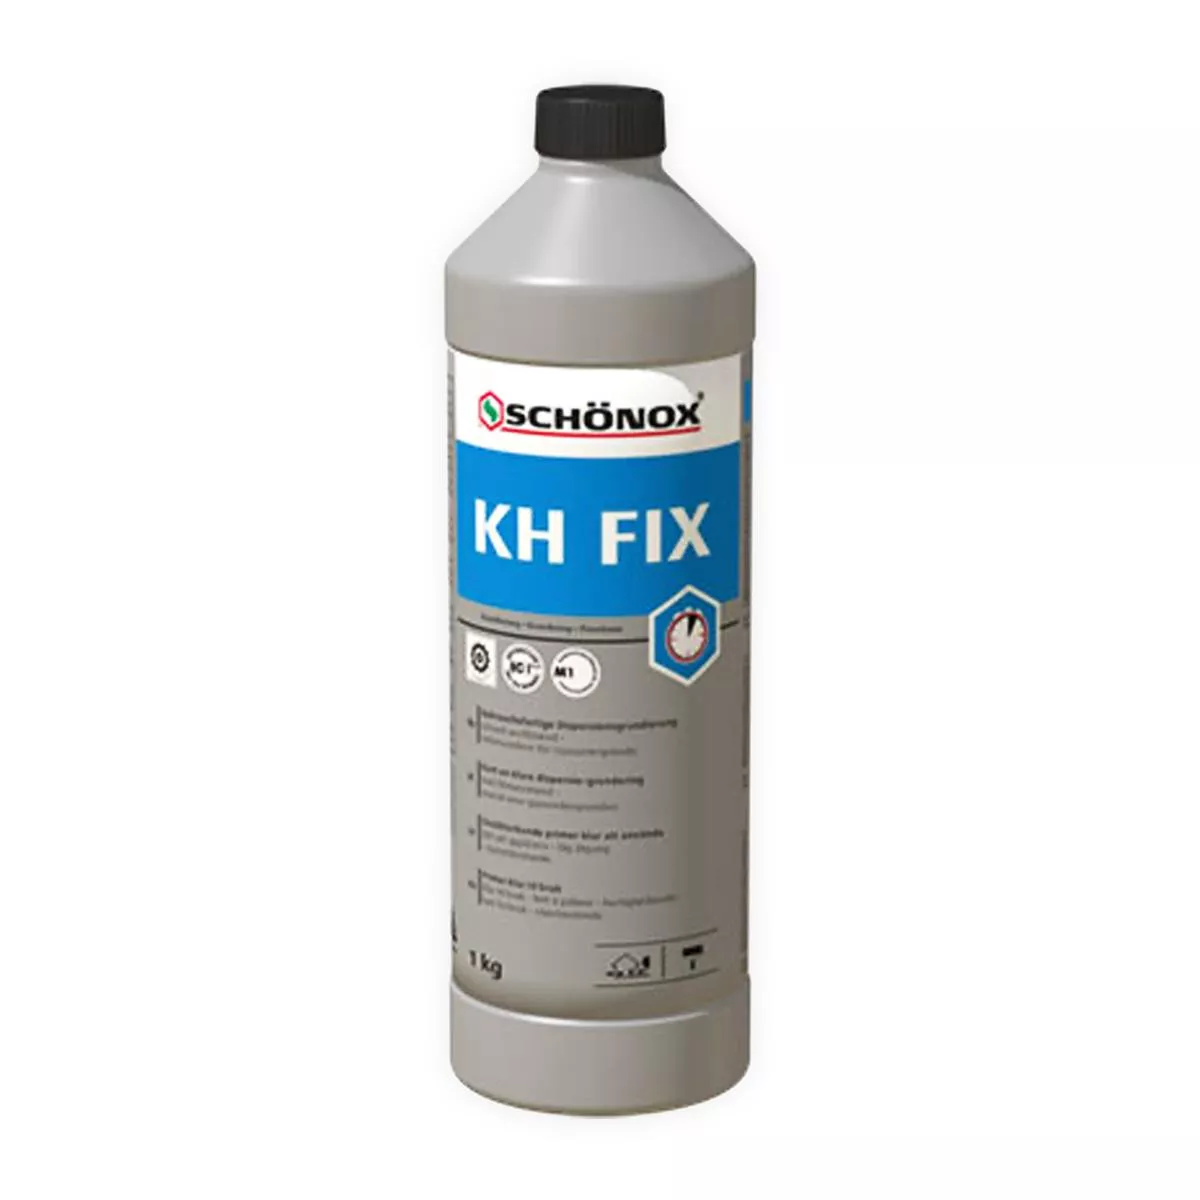 Primer spreman za upotrebu Schönox KH FIX disperzija ljepila od sintetičke smole 1 kg